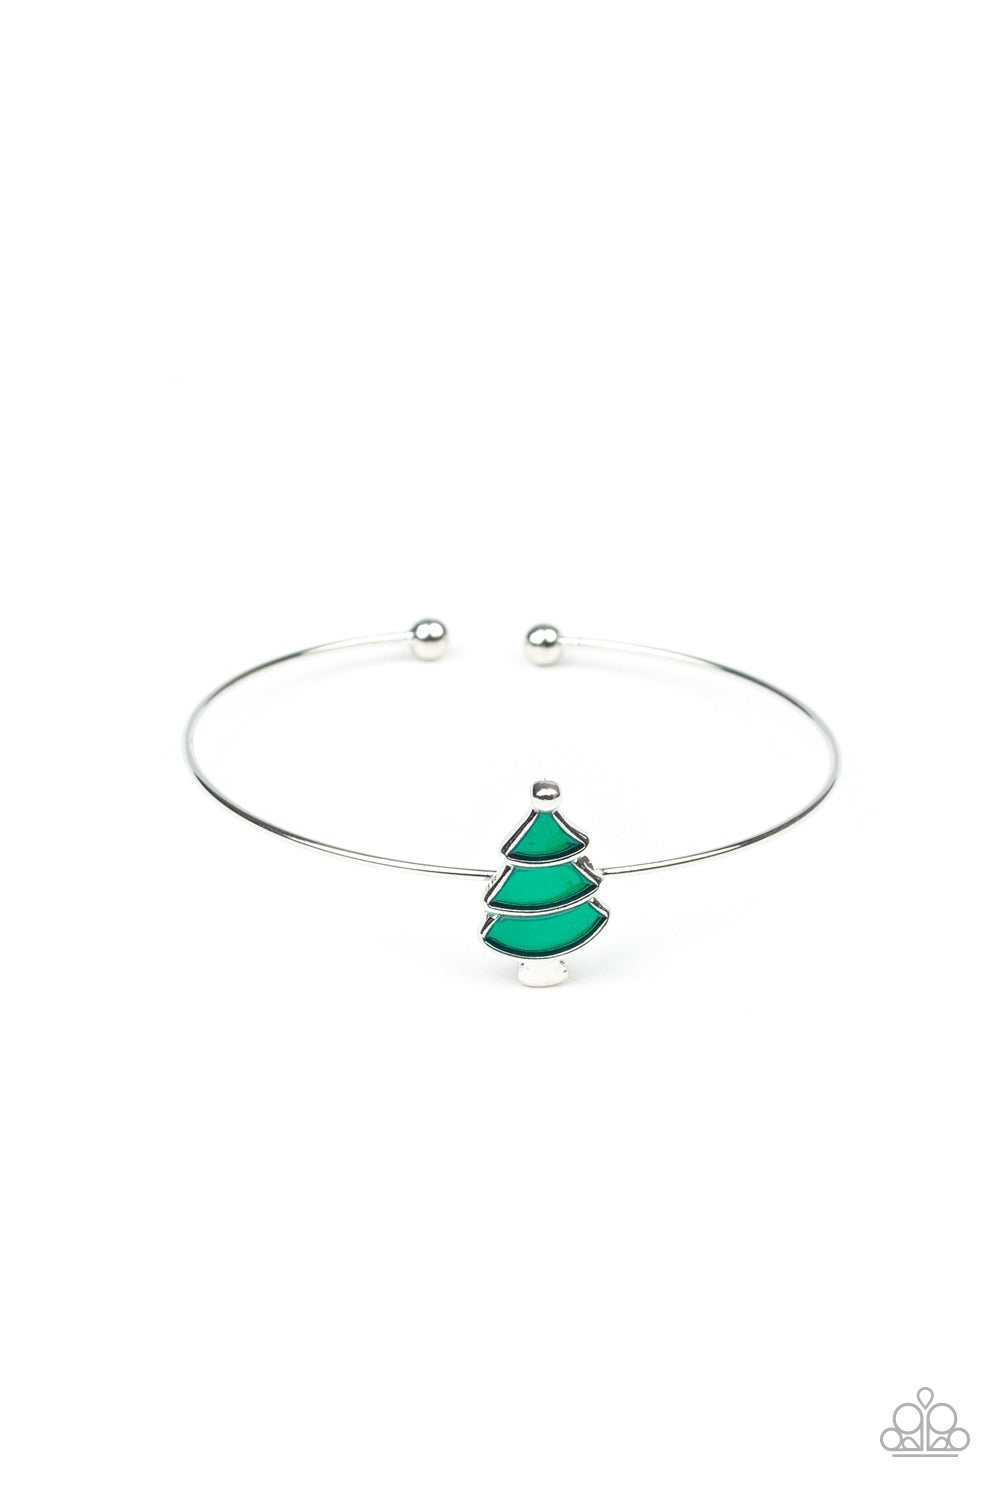 Starlet Shimmer Bracelet - Christmas Tree